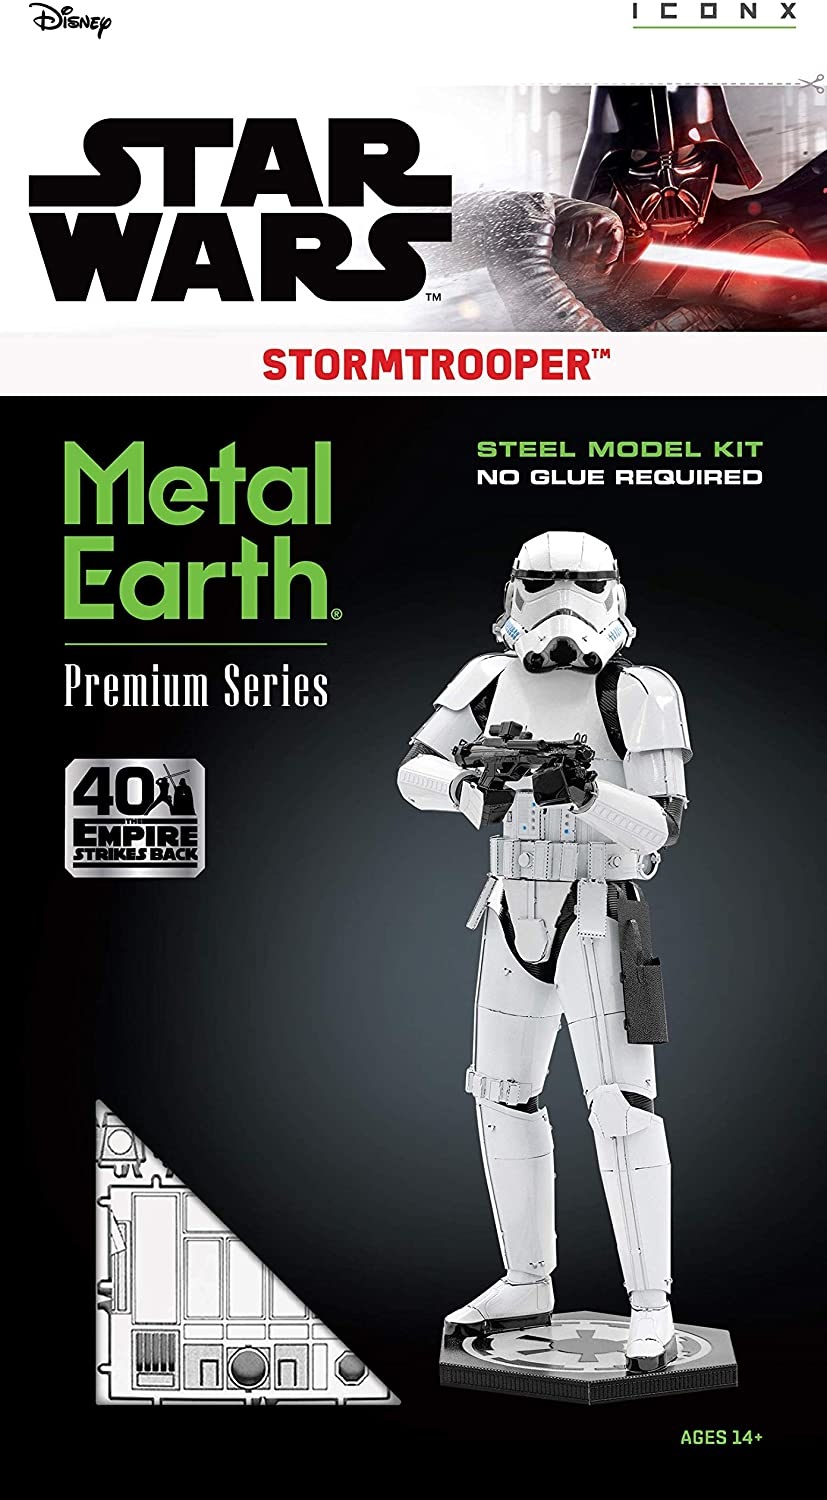 Metal Earth Premium Series - Star Wars : C-3PO - Maitre des Jeux